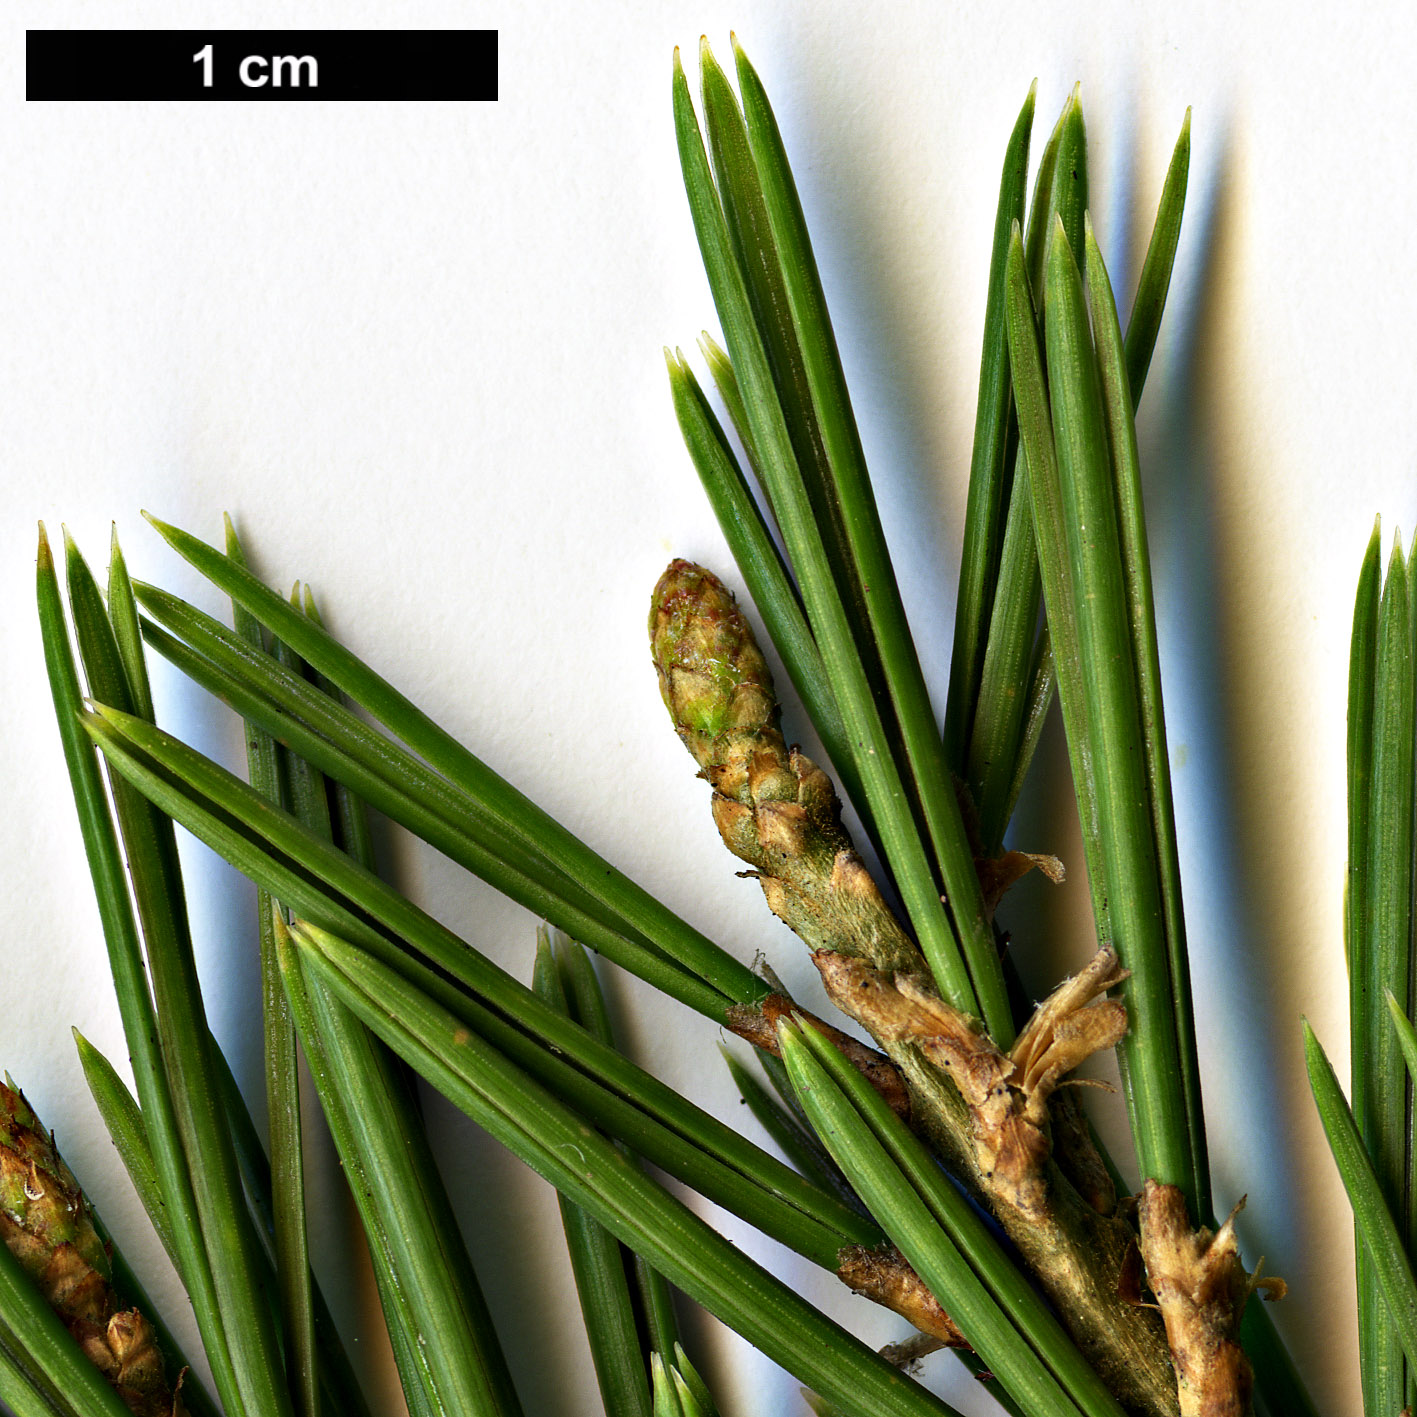 High resolution image: Family: Pinaceae - Genus: Pinus - Taxon: quadrifolia